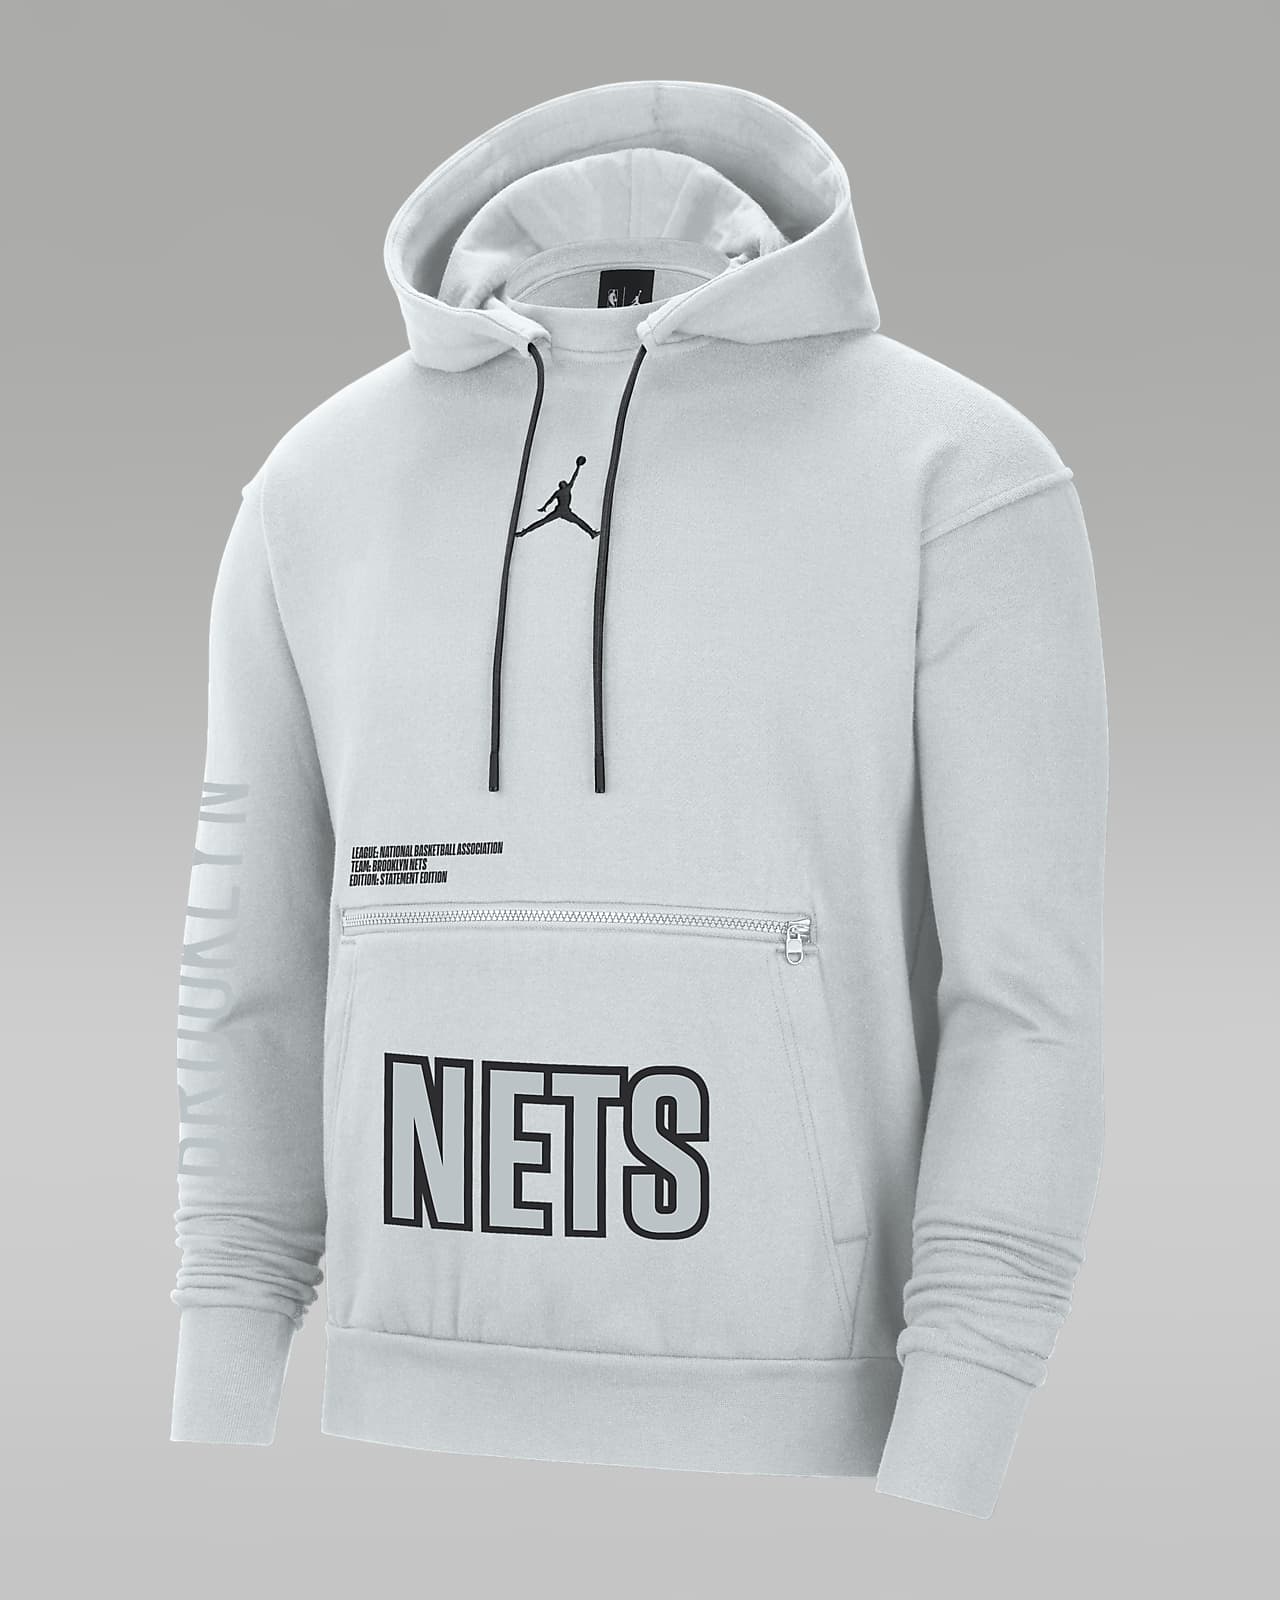 nets statement hoodie